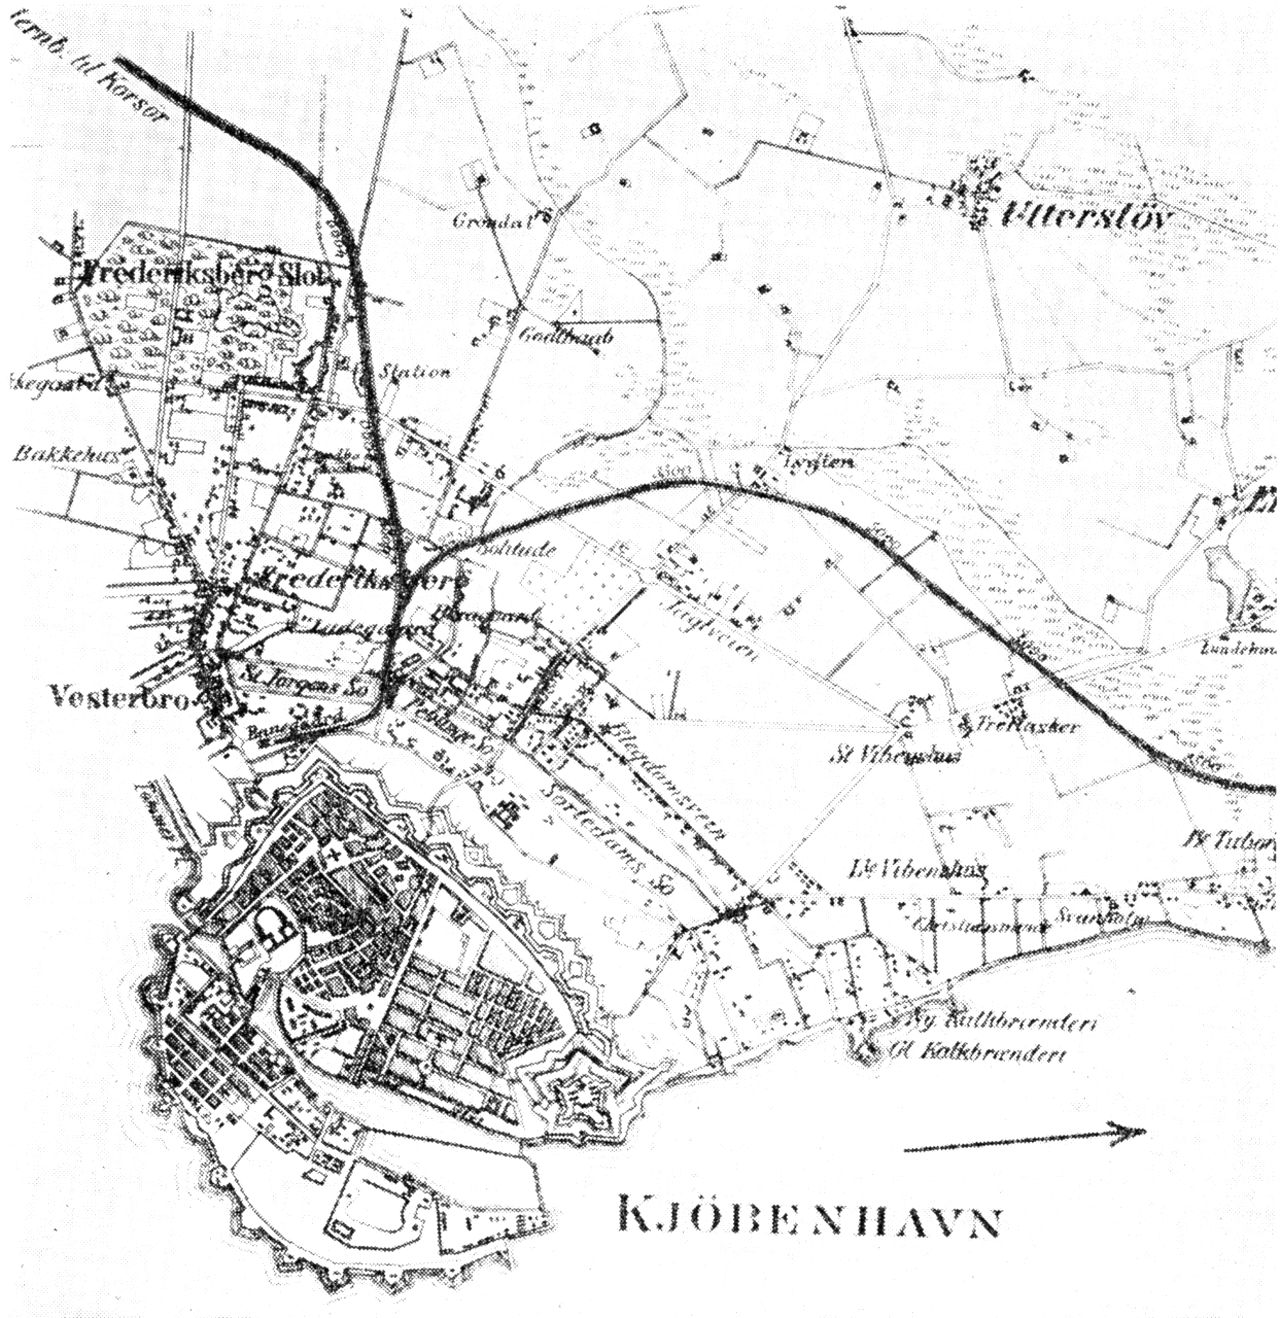 (Kort). København og omegn 1864 med byens anden banegård, Korsørbanen (til venstre) og Nordbanen og Klampenborgbanen (mod højre).